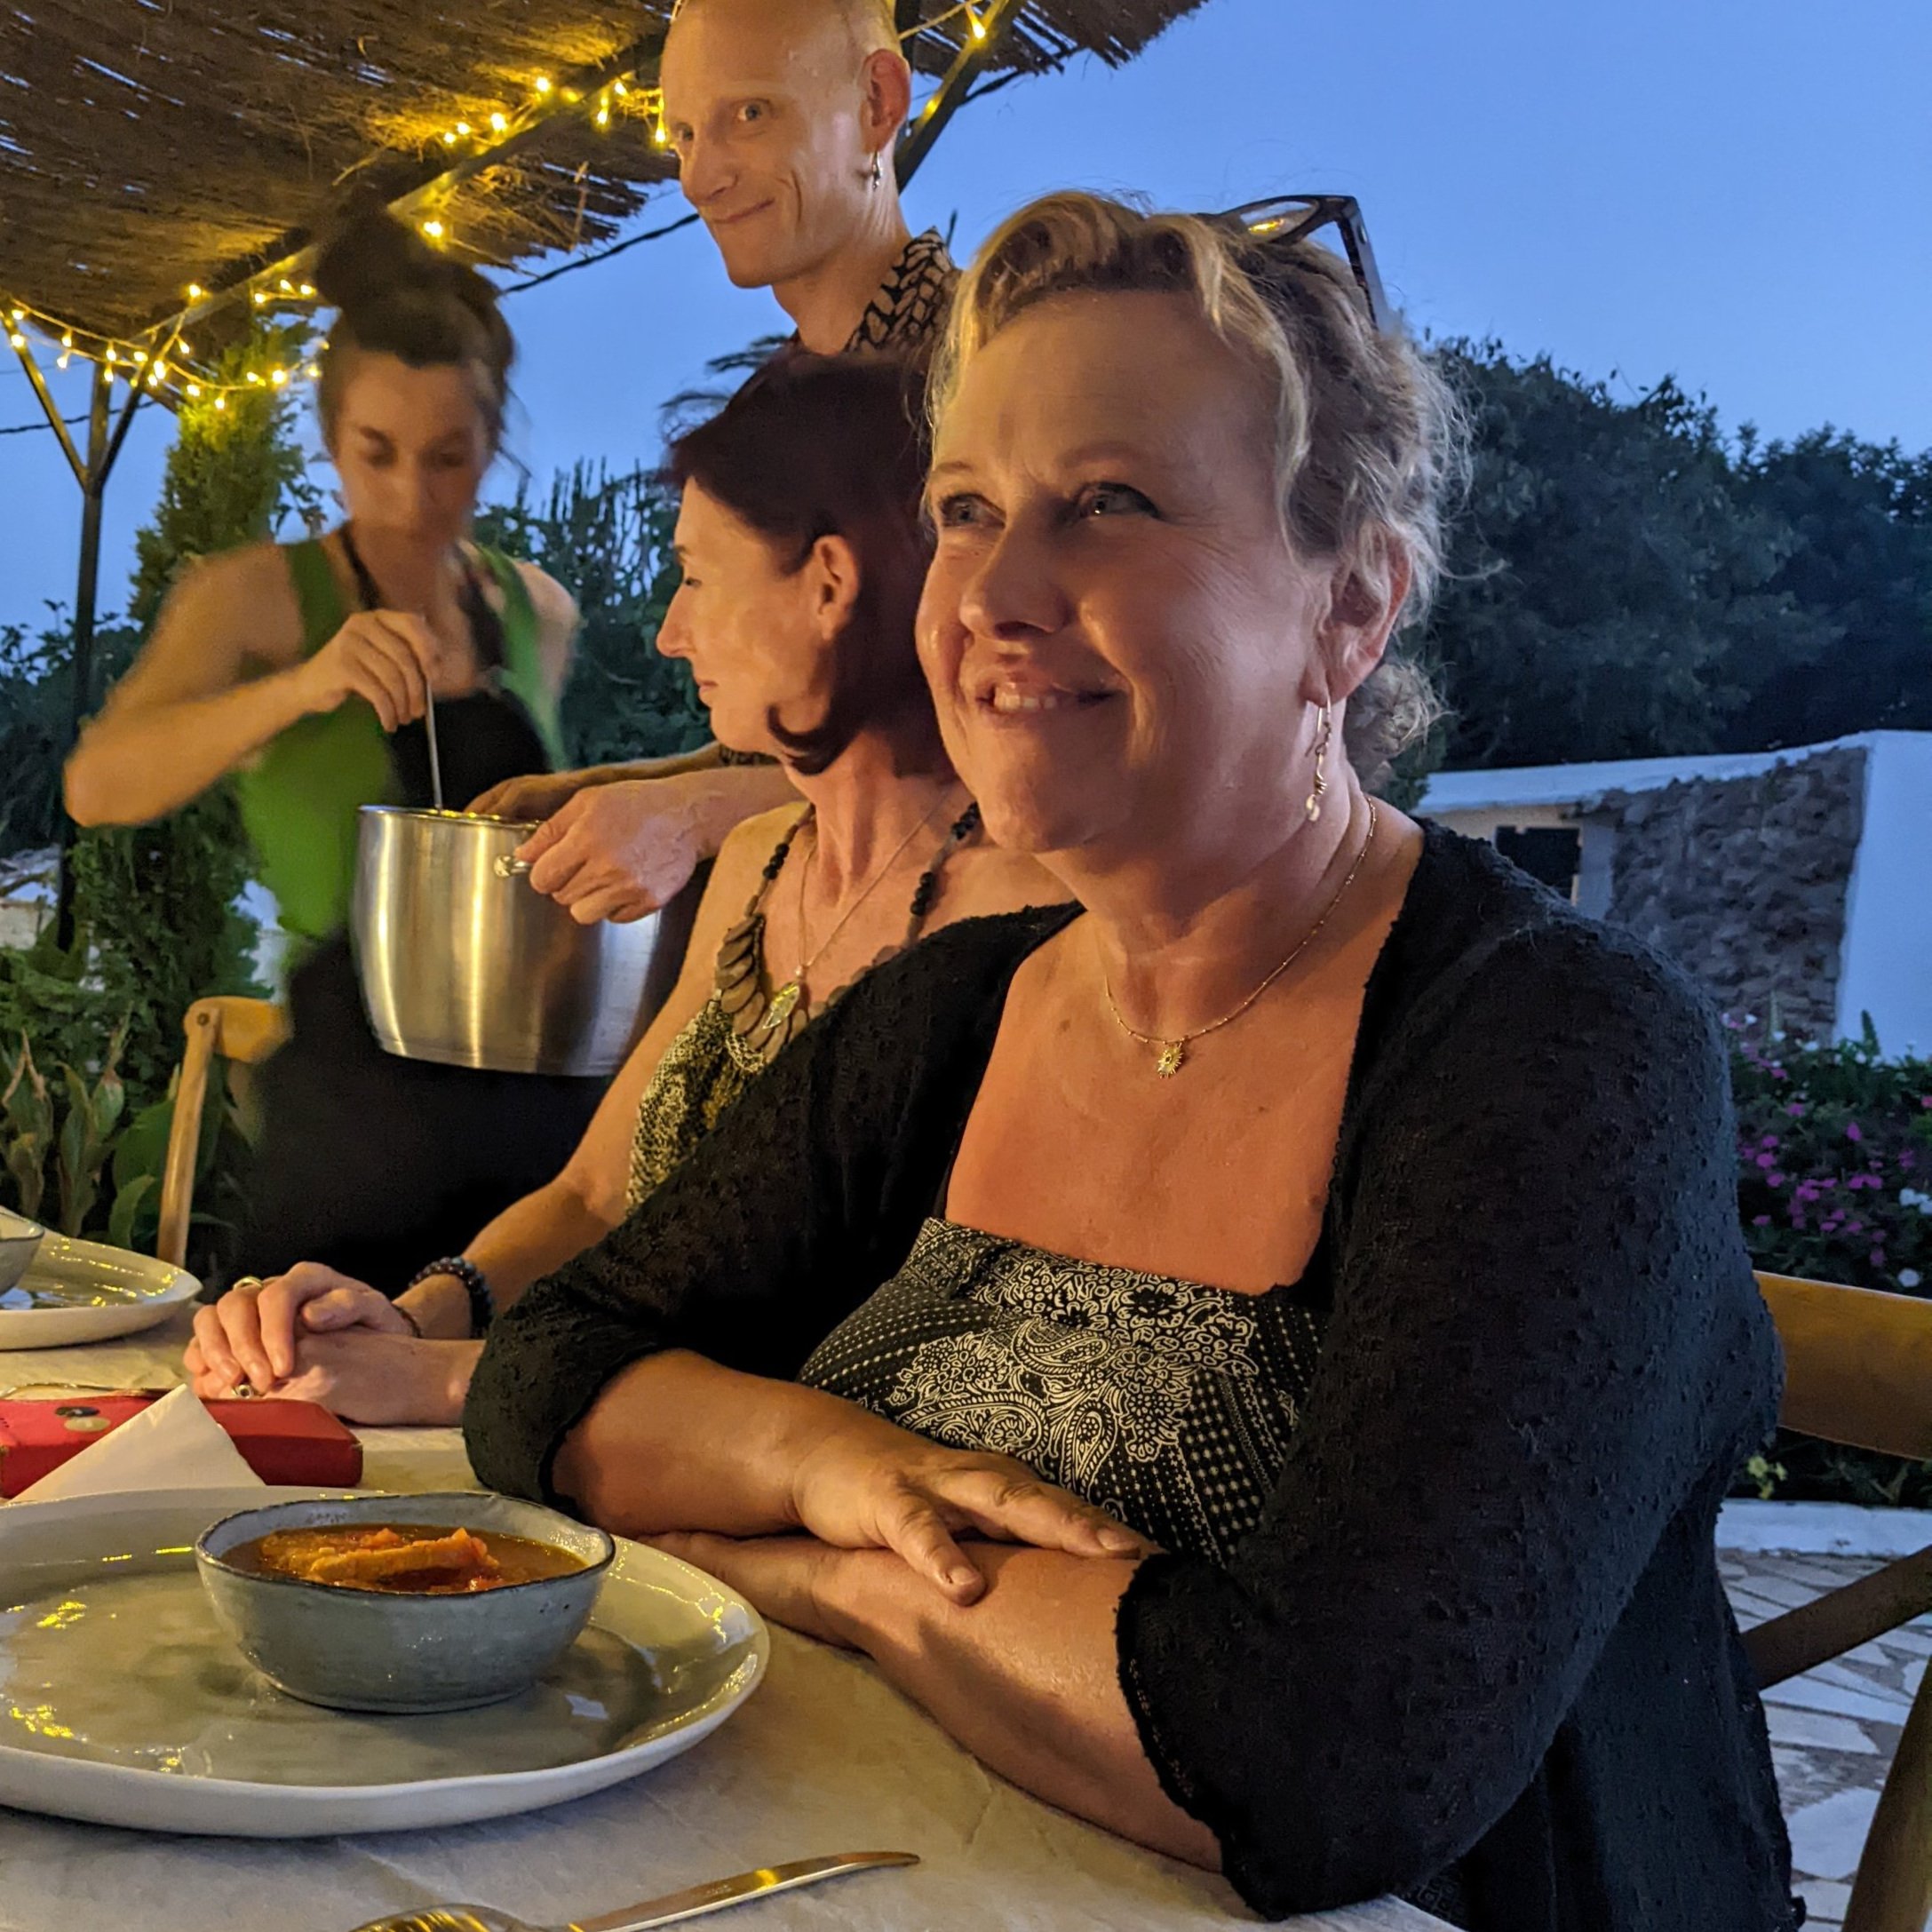 Menorca+Beauty+at+Dinner+23.jpg